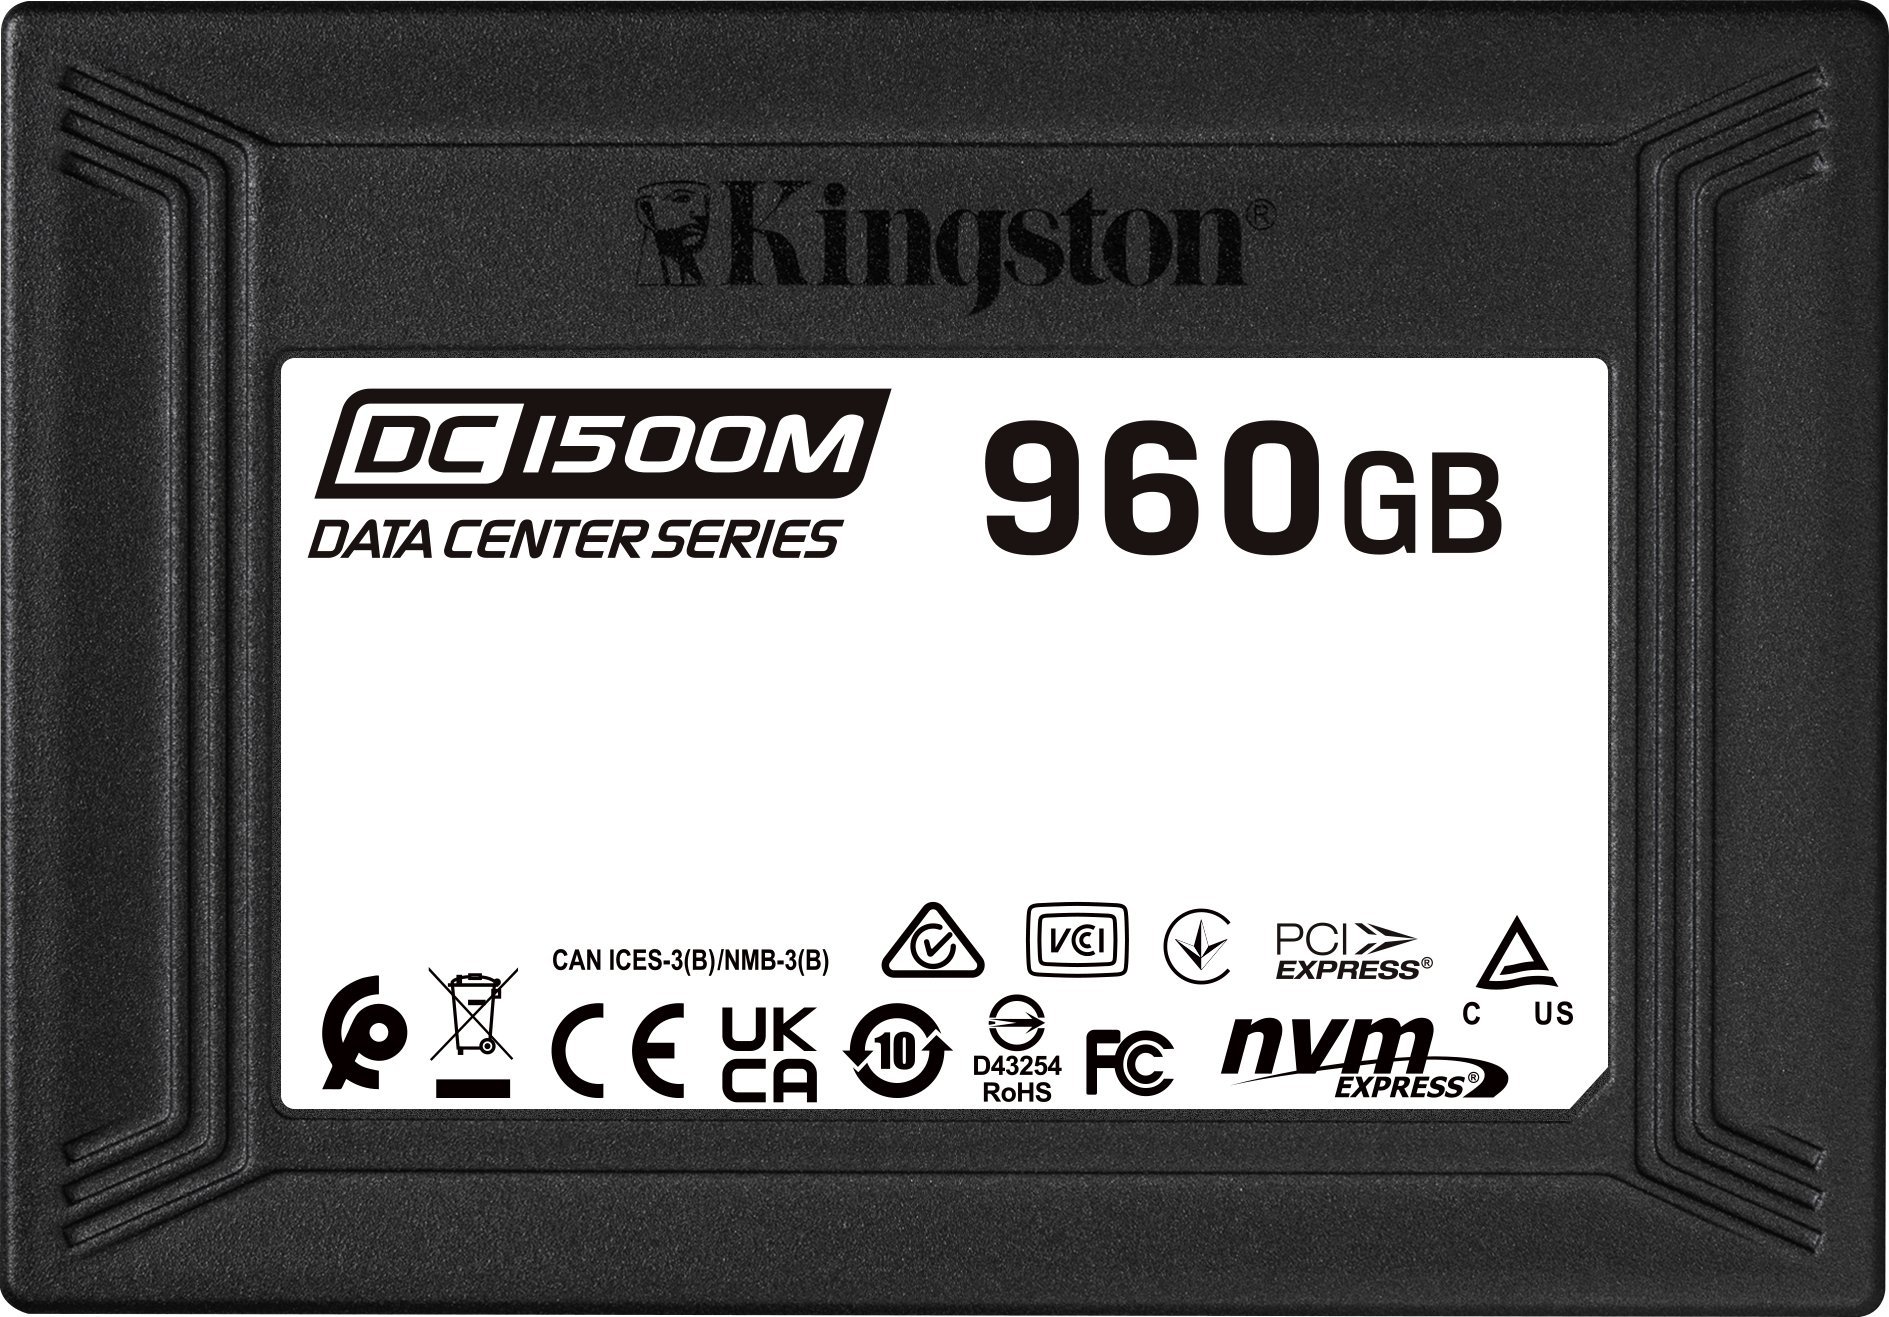 KINGSTON SSD 960GB DC1500M U.2 NVMe SSD disks